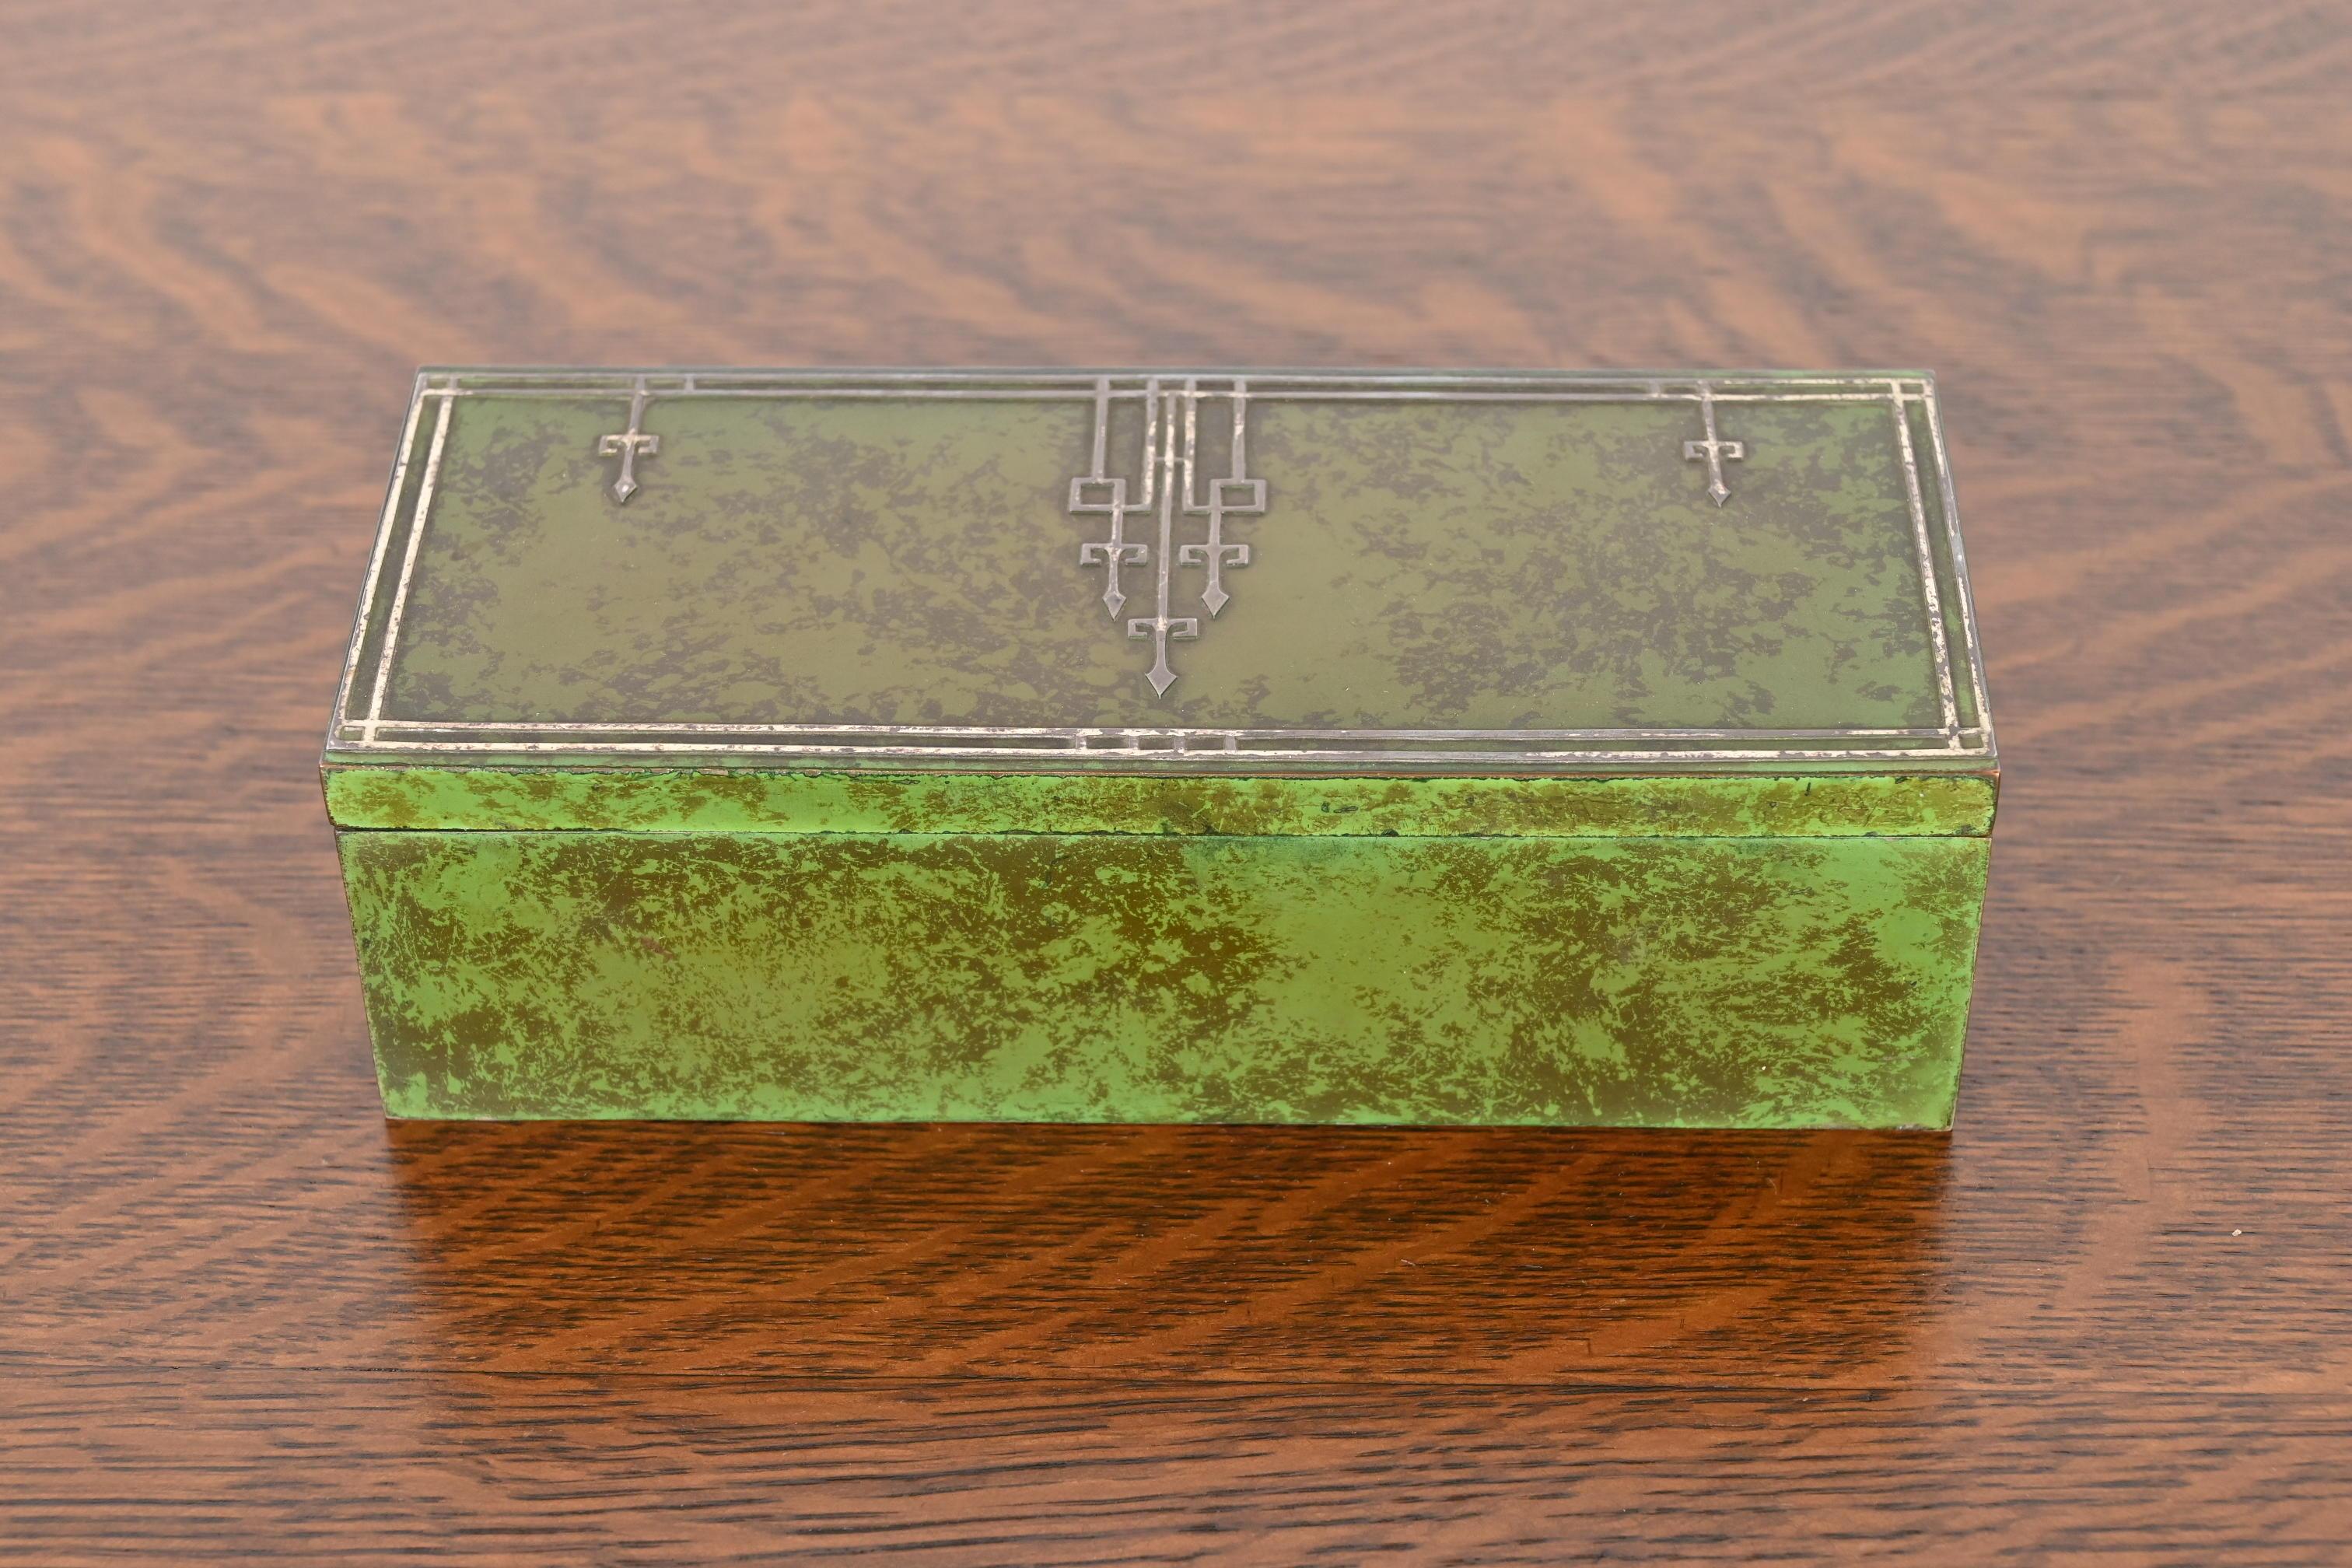 Eine wunderschöne Humidor-Box aus der Zeit des Arts & Crafts mit grüner Patina

Von Heintz Art Metal Shop

USA, Anfang 20. Jahrhundert

Sterlingsilber auf Bronze, innen mit Zedernholz ausgekleidet.

Maße: 8,5 